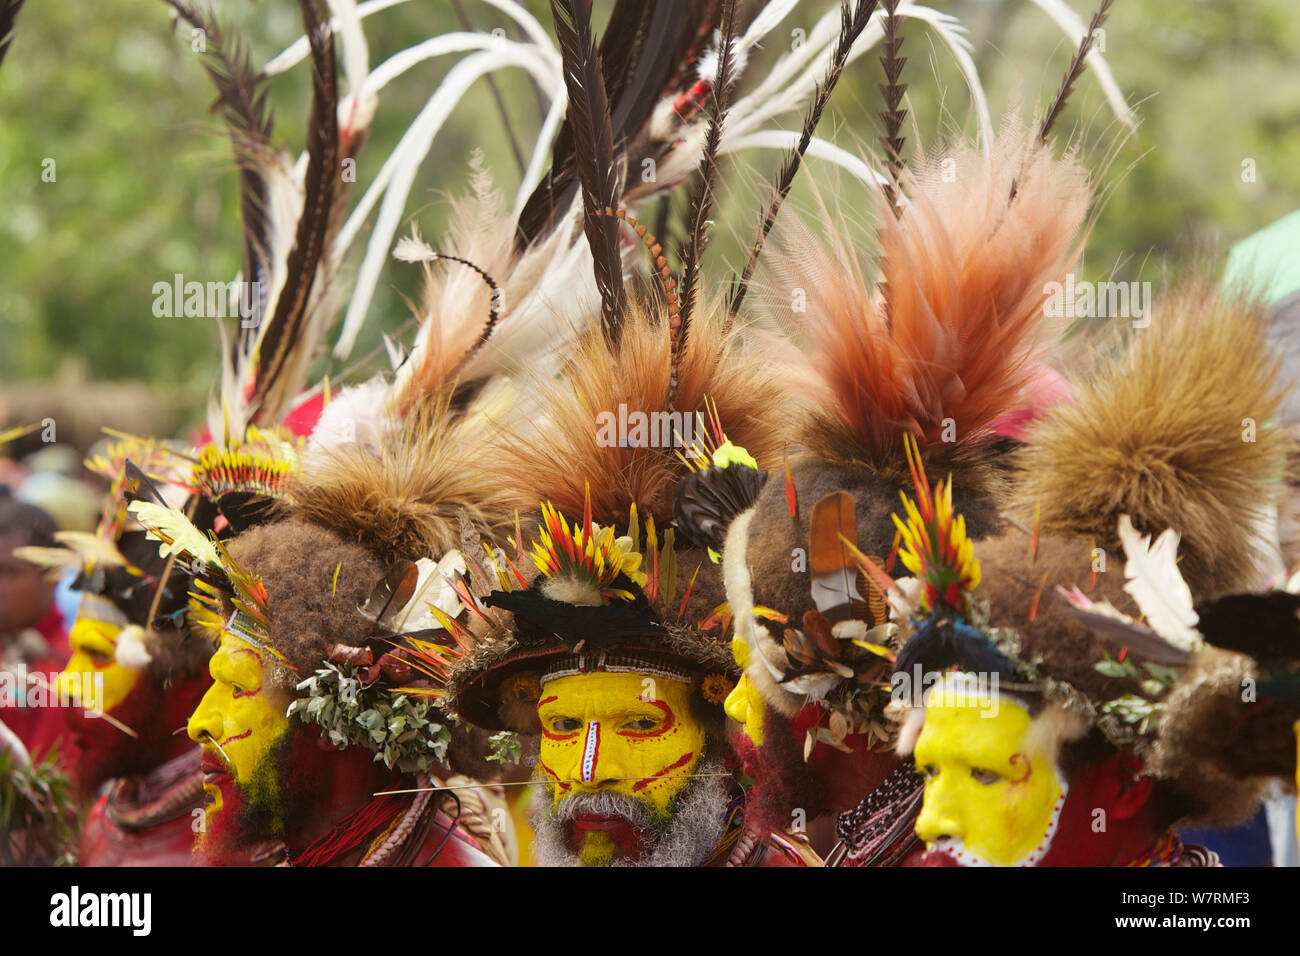 Die Huli ingsing' Tanz Zeremonie. Huli wigmen tragen Echthaar Perücken und Federn von verschiedenen Vögeln von Paradies und andere Vogelarten. Tari Tal, Southern Highlands Provinz, Papua Neu Guinea. November 2010 Stockfoto